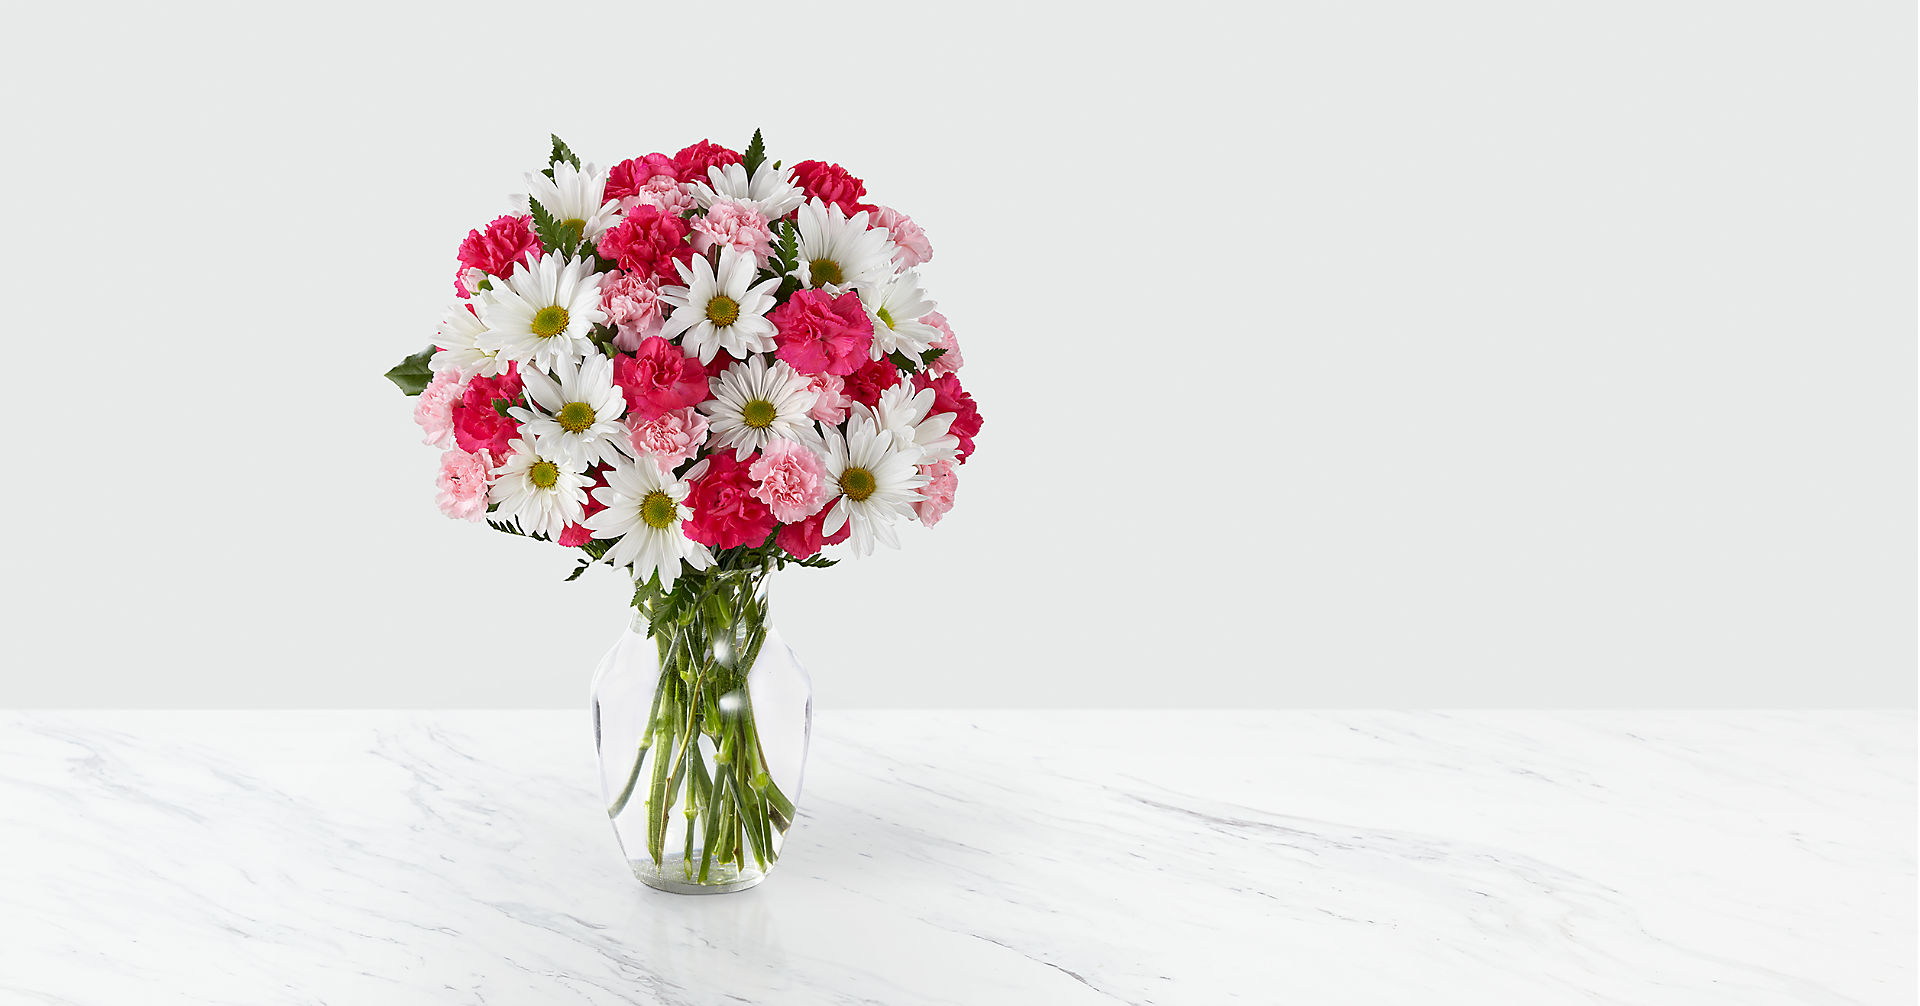 Sweet Surprises® Bouquet